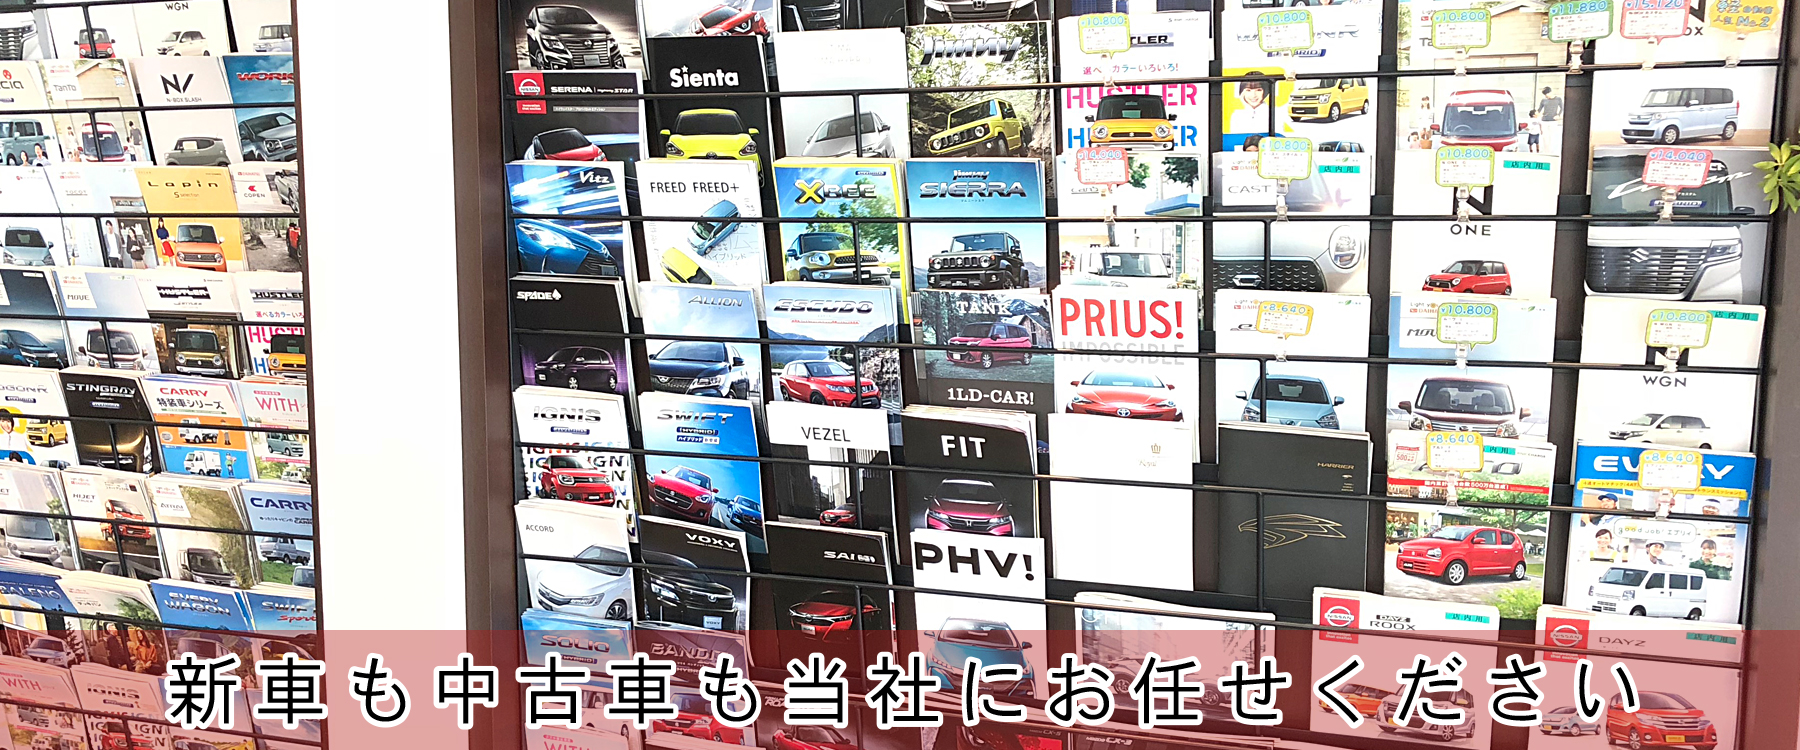 株式会社ジョイドライブー熊本の新車 中古車販売 車検 新車の軽自動車が月々コミコミで乗れるフラット7 愛車のキズへこみのカーコンビニ倶楽部 車 のことなら当社にお任せください